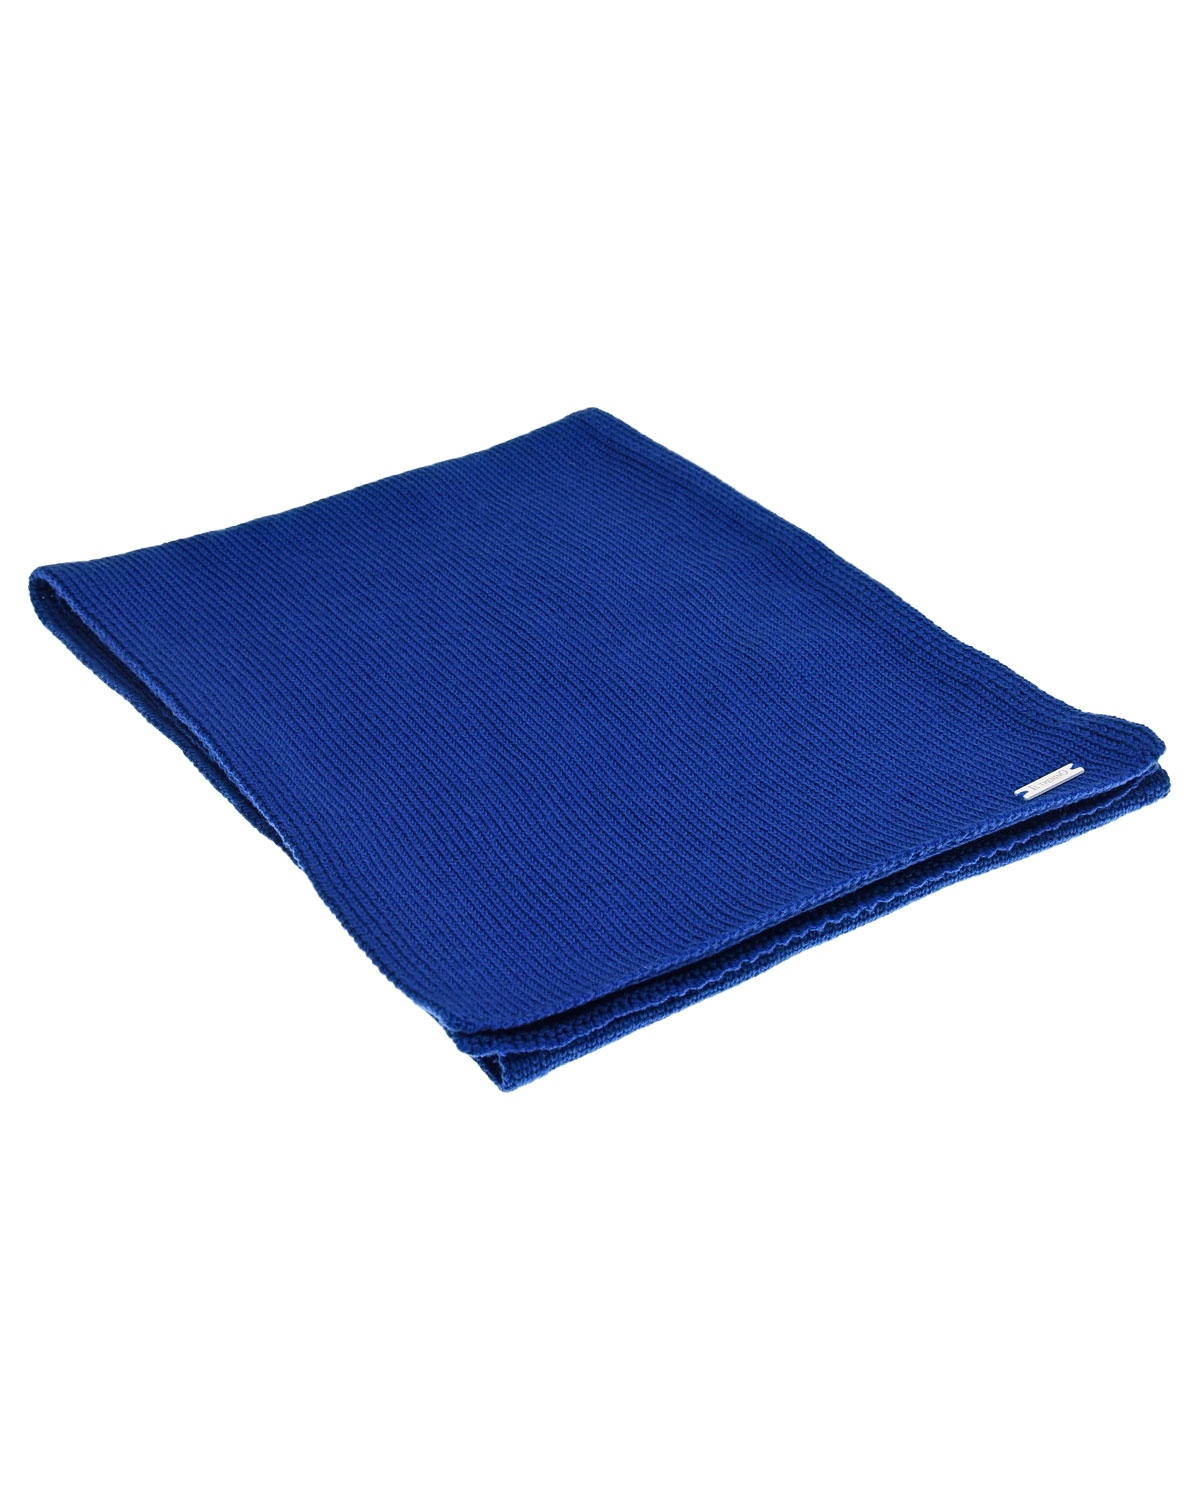 Синий шарф из шерсти Il Trenino детский, размер unica